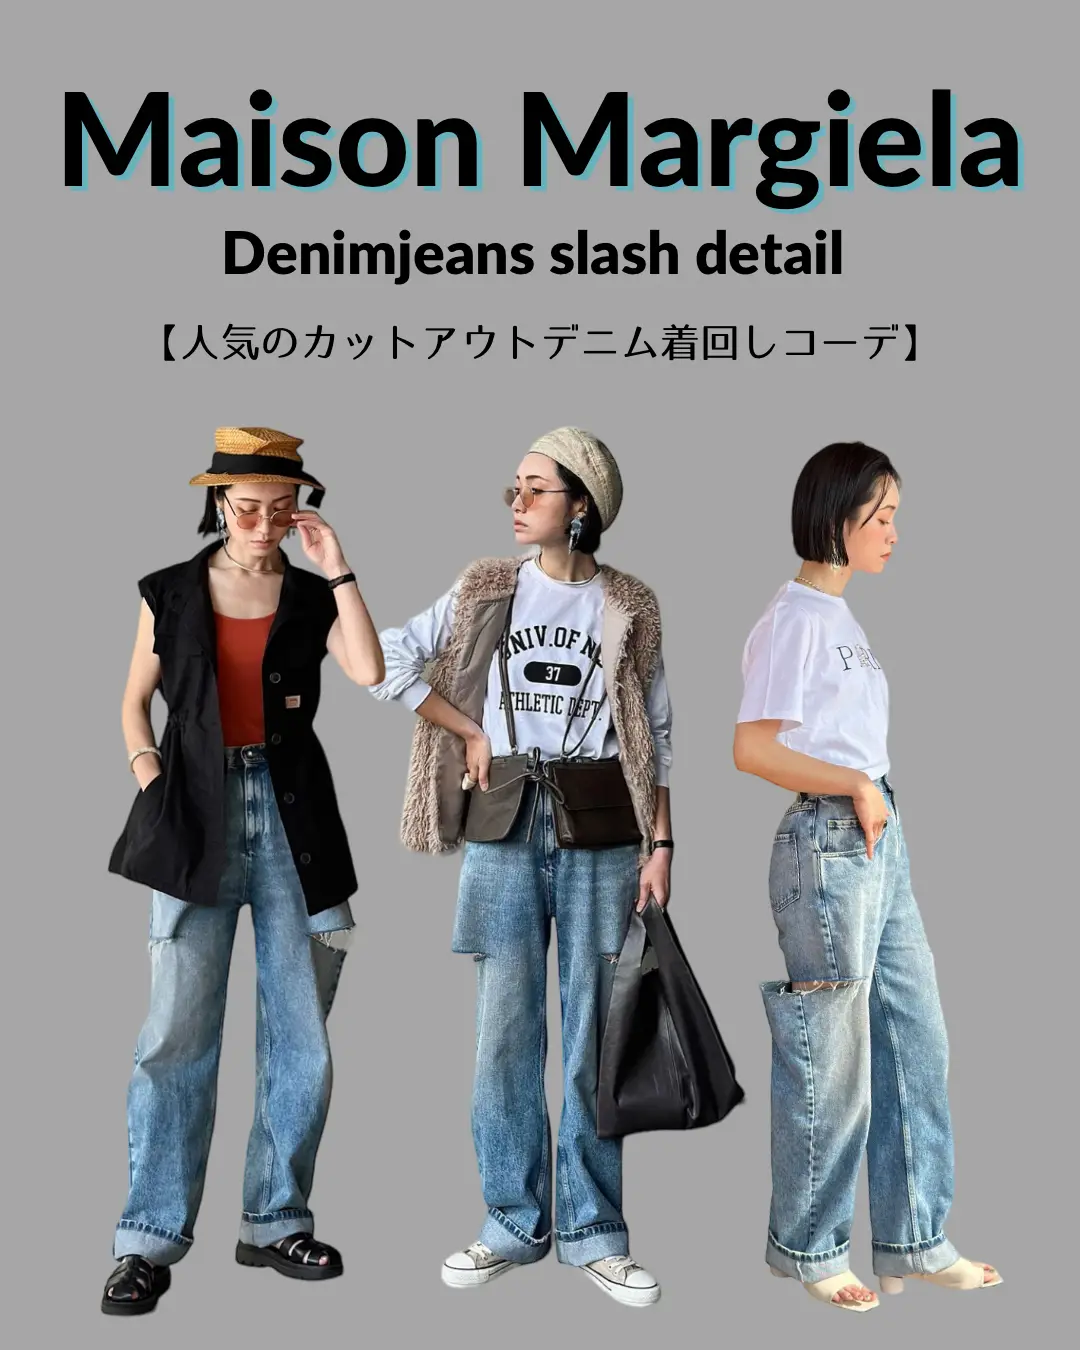 Maison Margielaの大人気デニム着回しコーデ | IMOKOが投稿したフォト